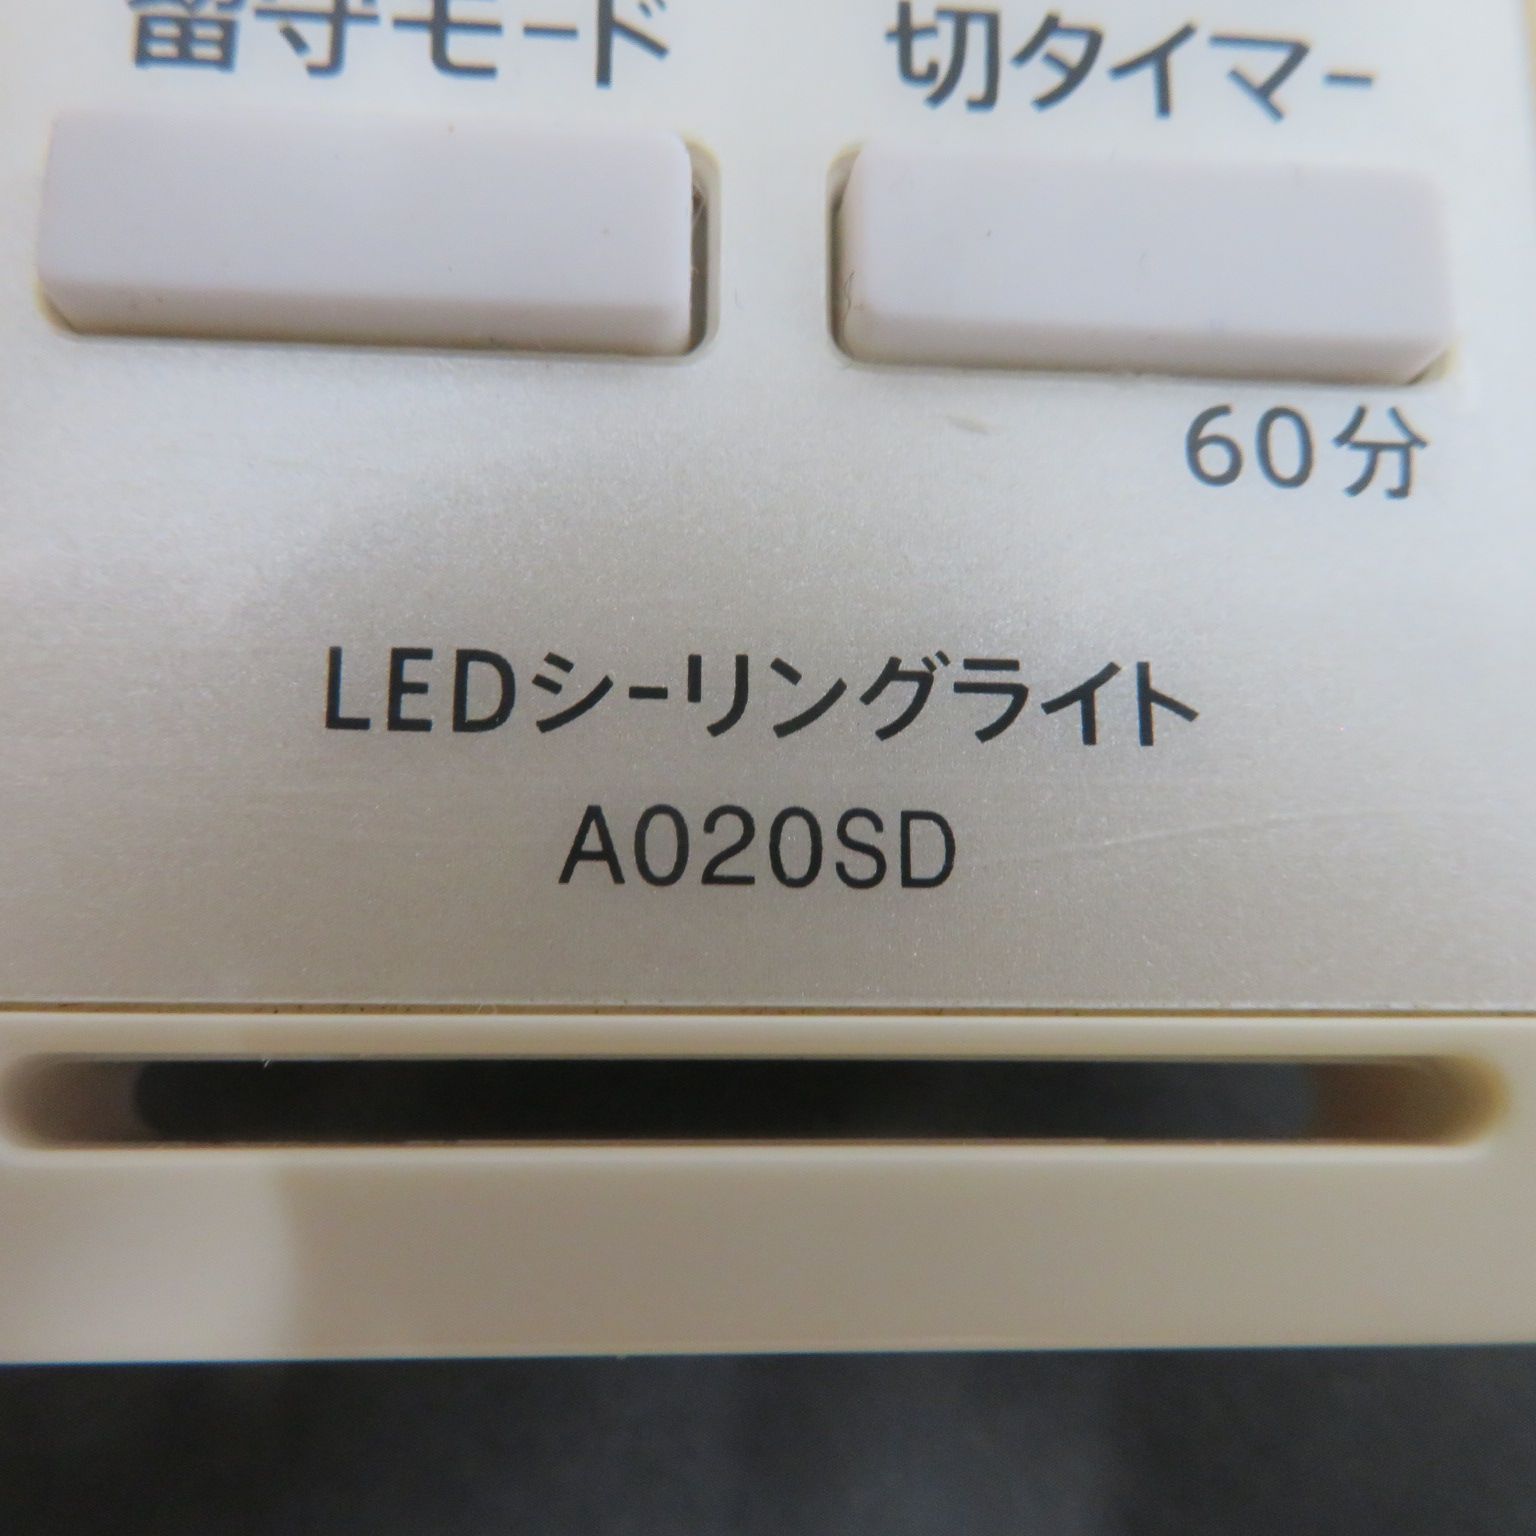 2957☆シャープ(SHARP)照明リモコンA020SD